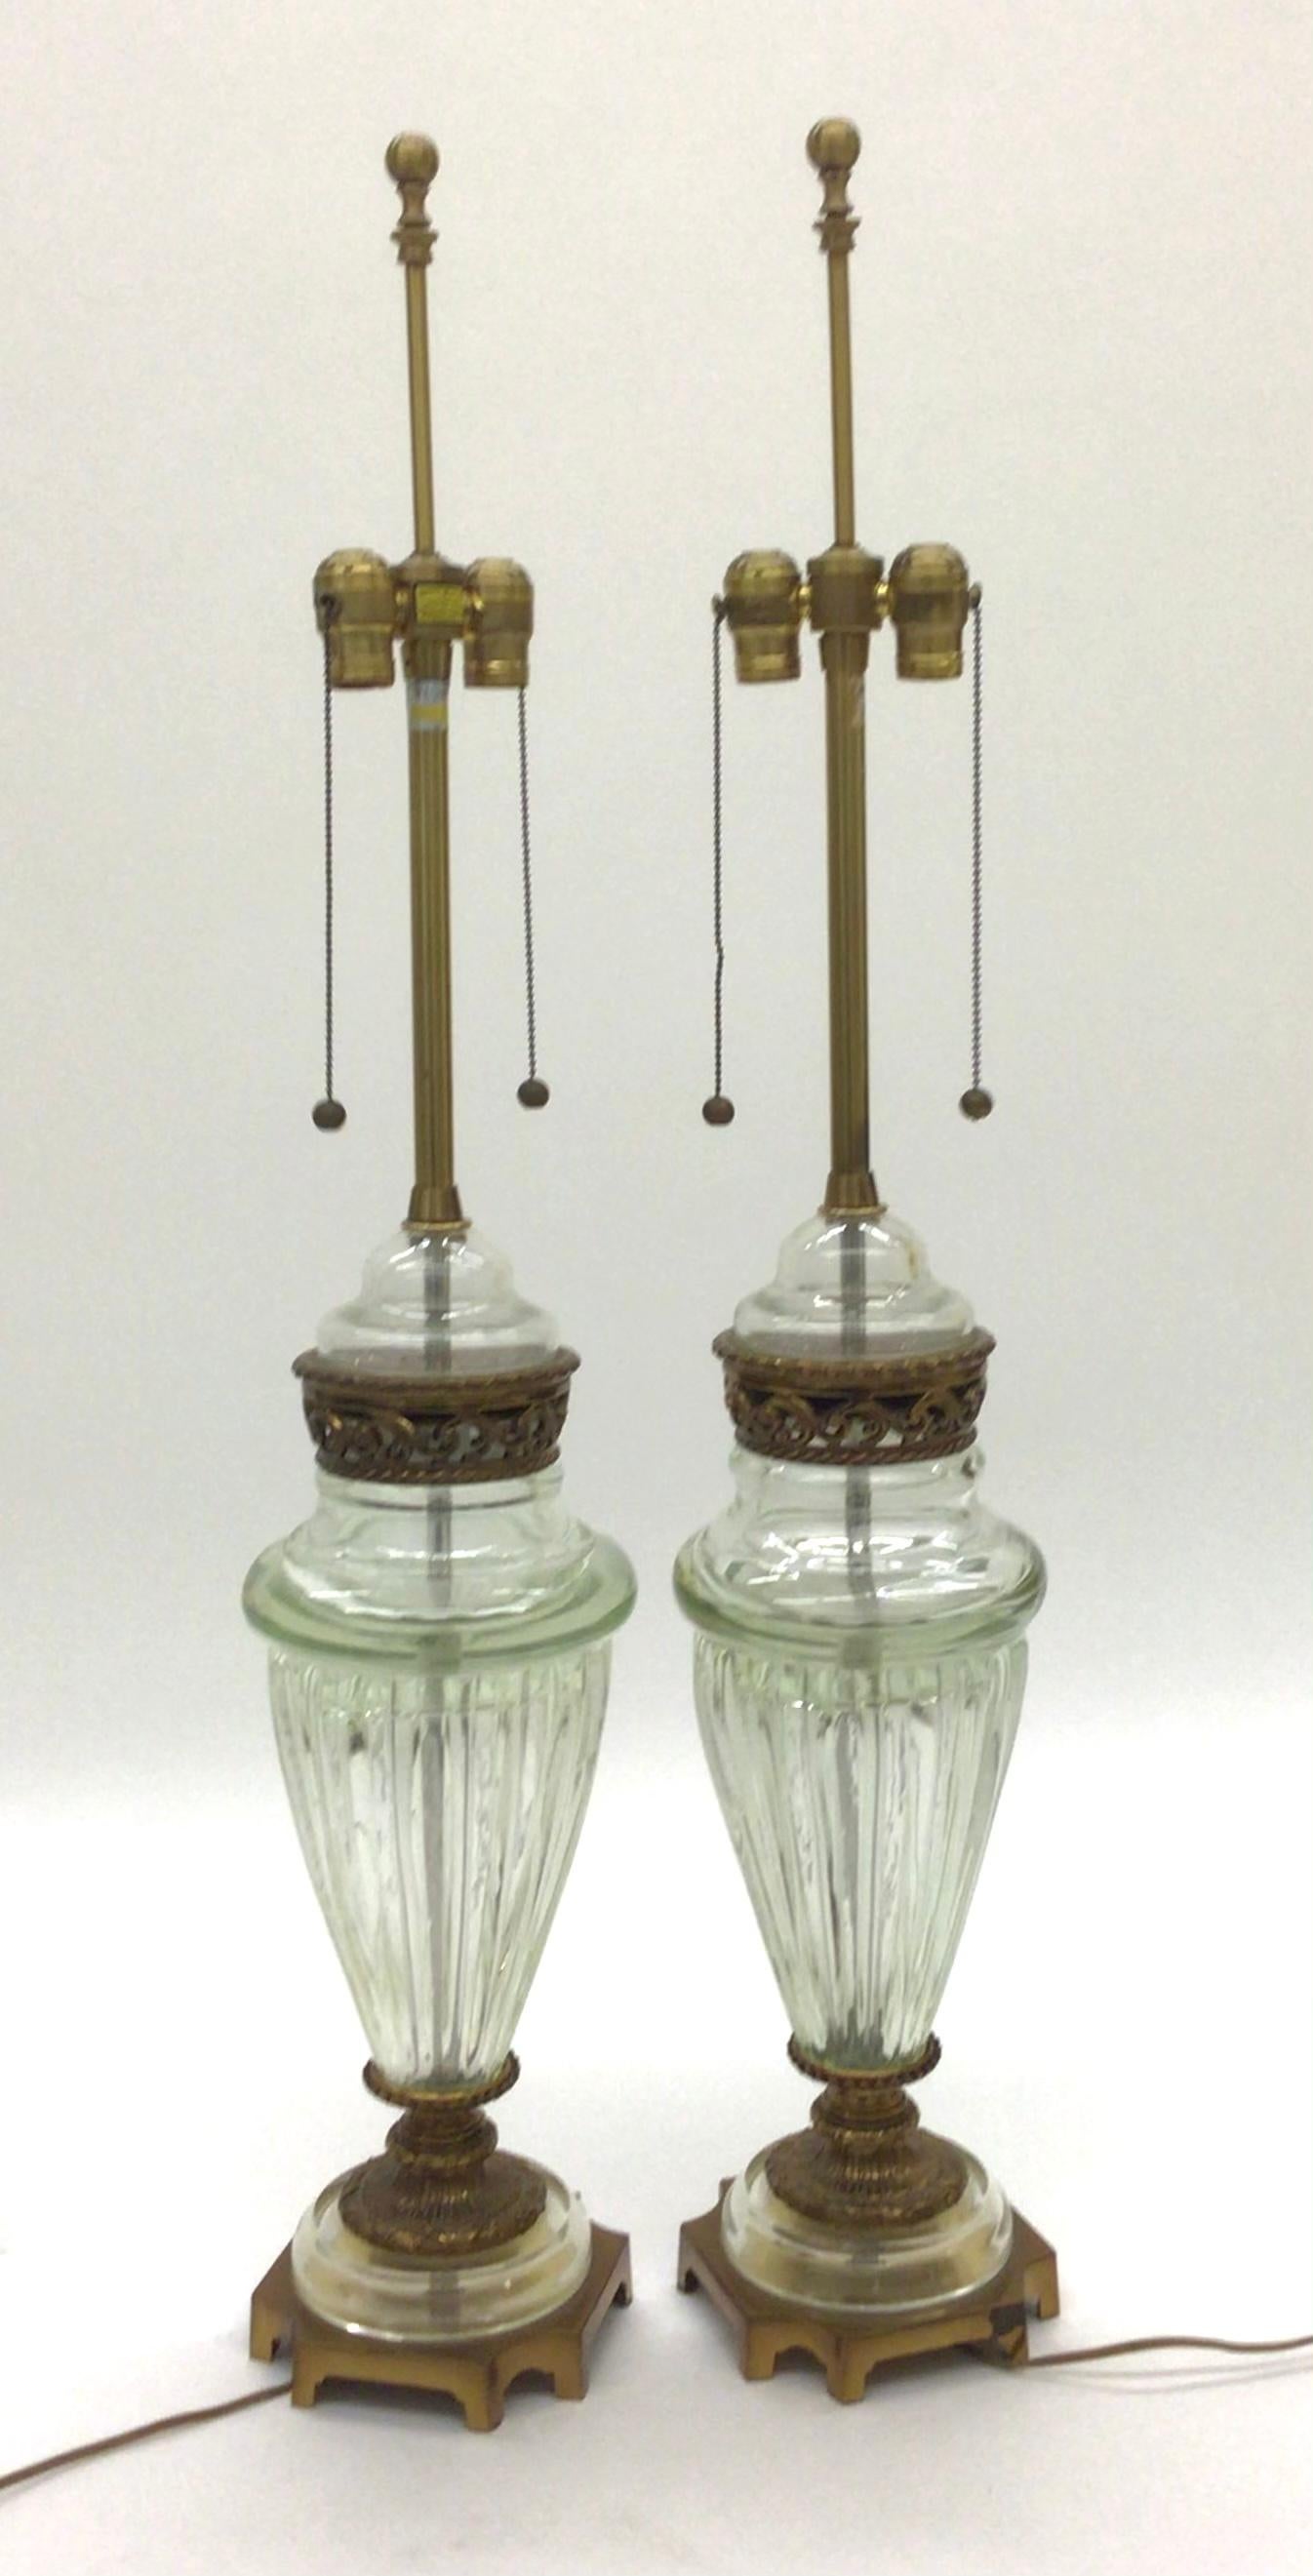 Grande paire de lampes Marbro des années 1950 avec verre soufflé par Archimede Seguso. Les lampes ont ce matériel Marbro distinct couplé à l'étiquetage Marbro original. 

Marbro a réuni un groupe d'artistes et d'artisans très talentueux,